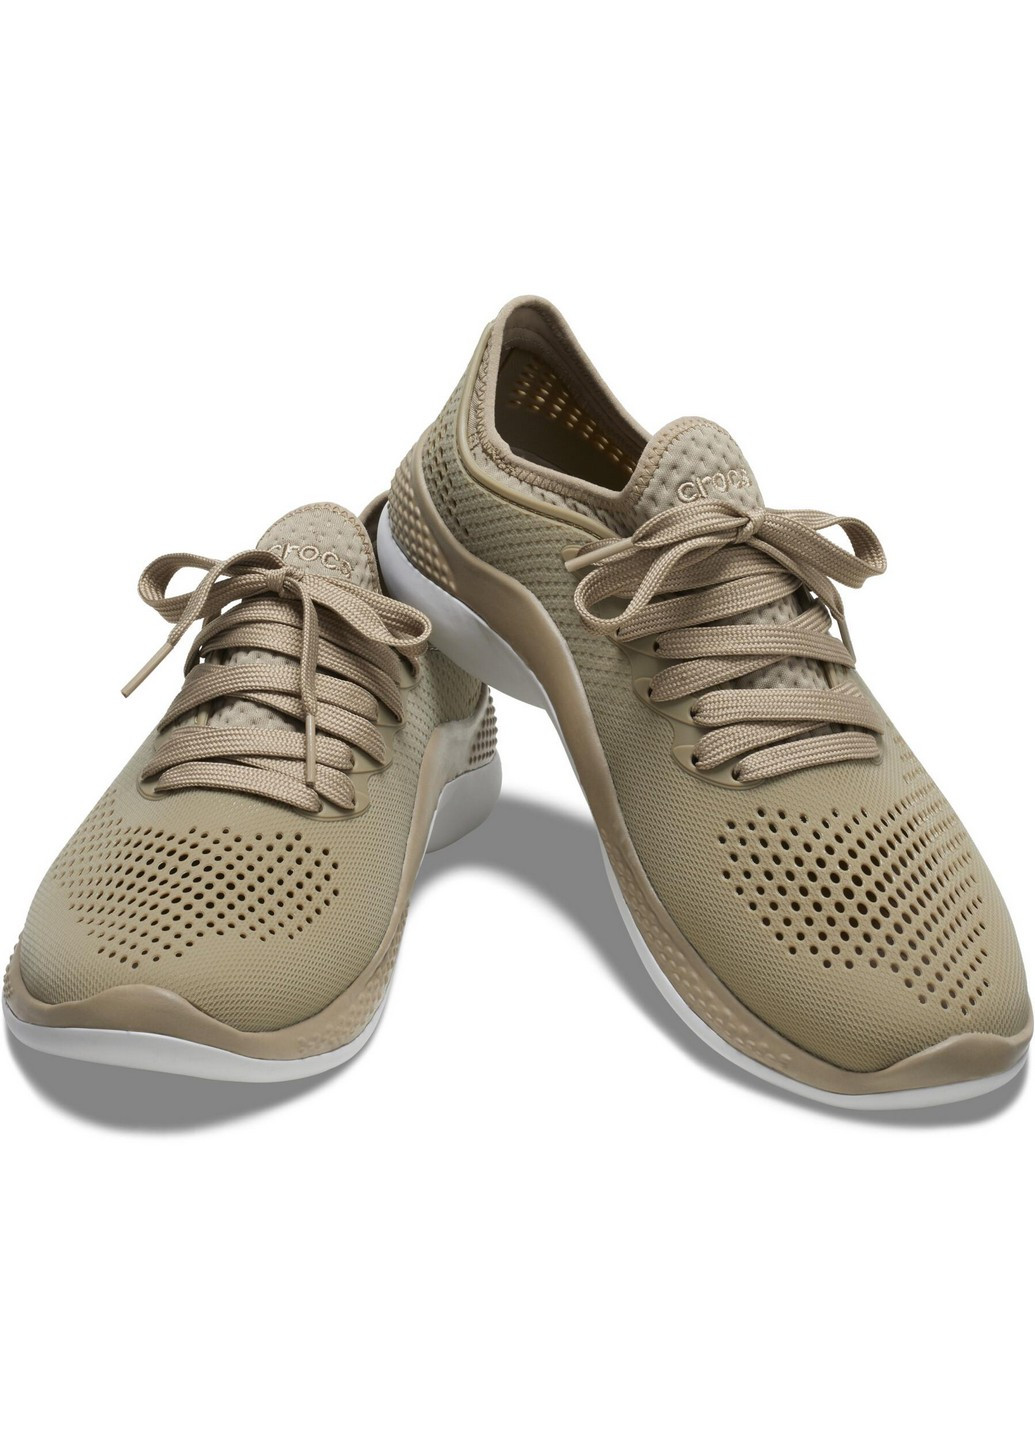 Оливковые (хаки) демисезонные кроссовки крокс Crocs LiteRide 360 Pacer Khaki